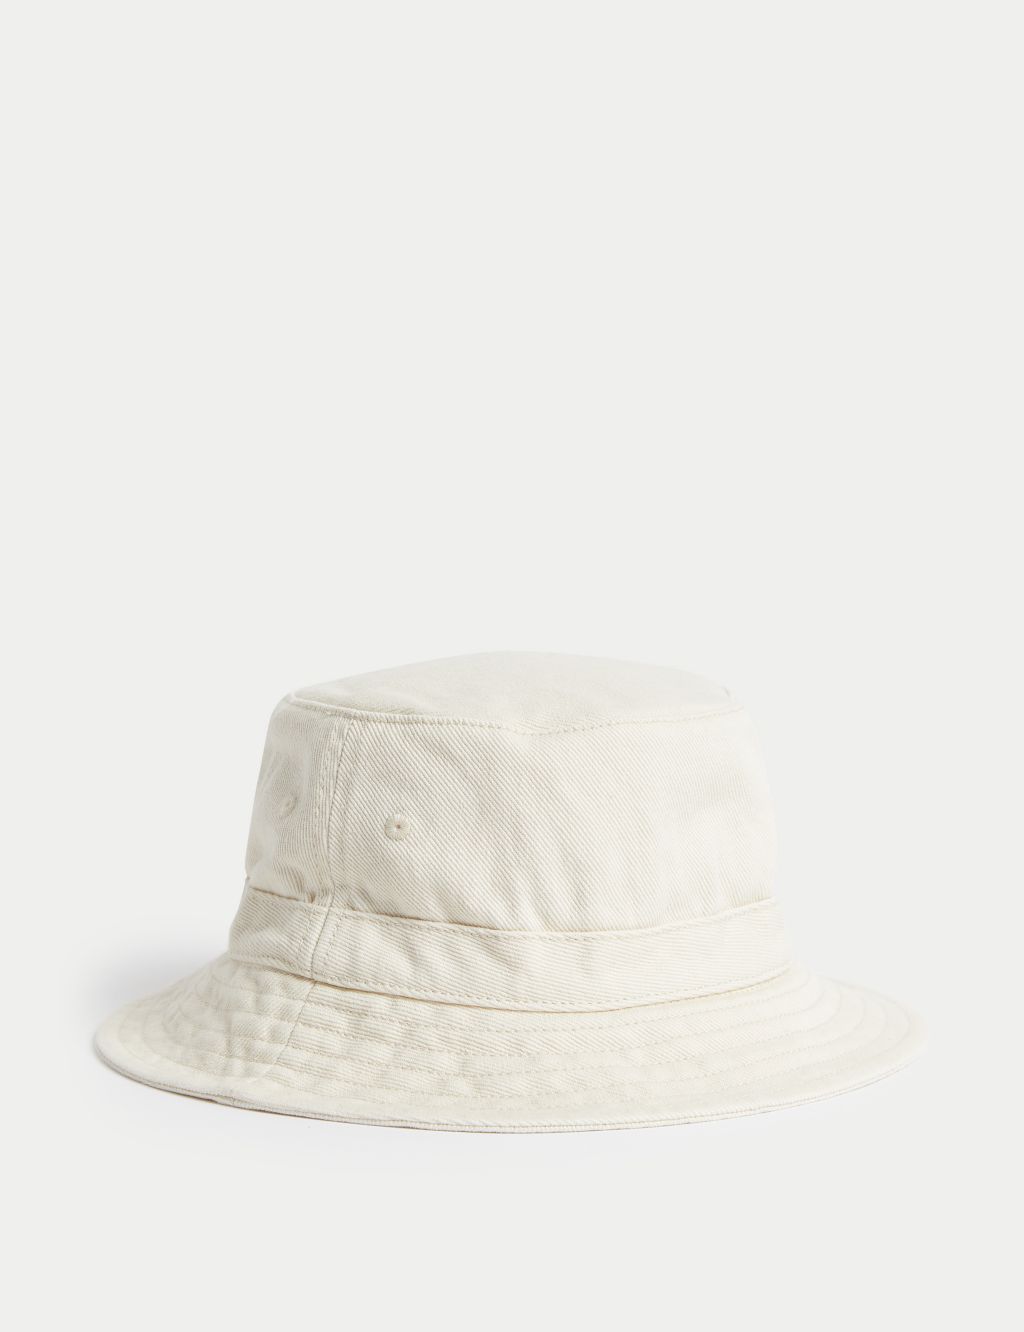 Kids' Pure Cotton Plain Sun Hat (1-13 Yrs) image 2